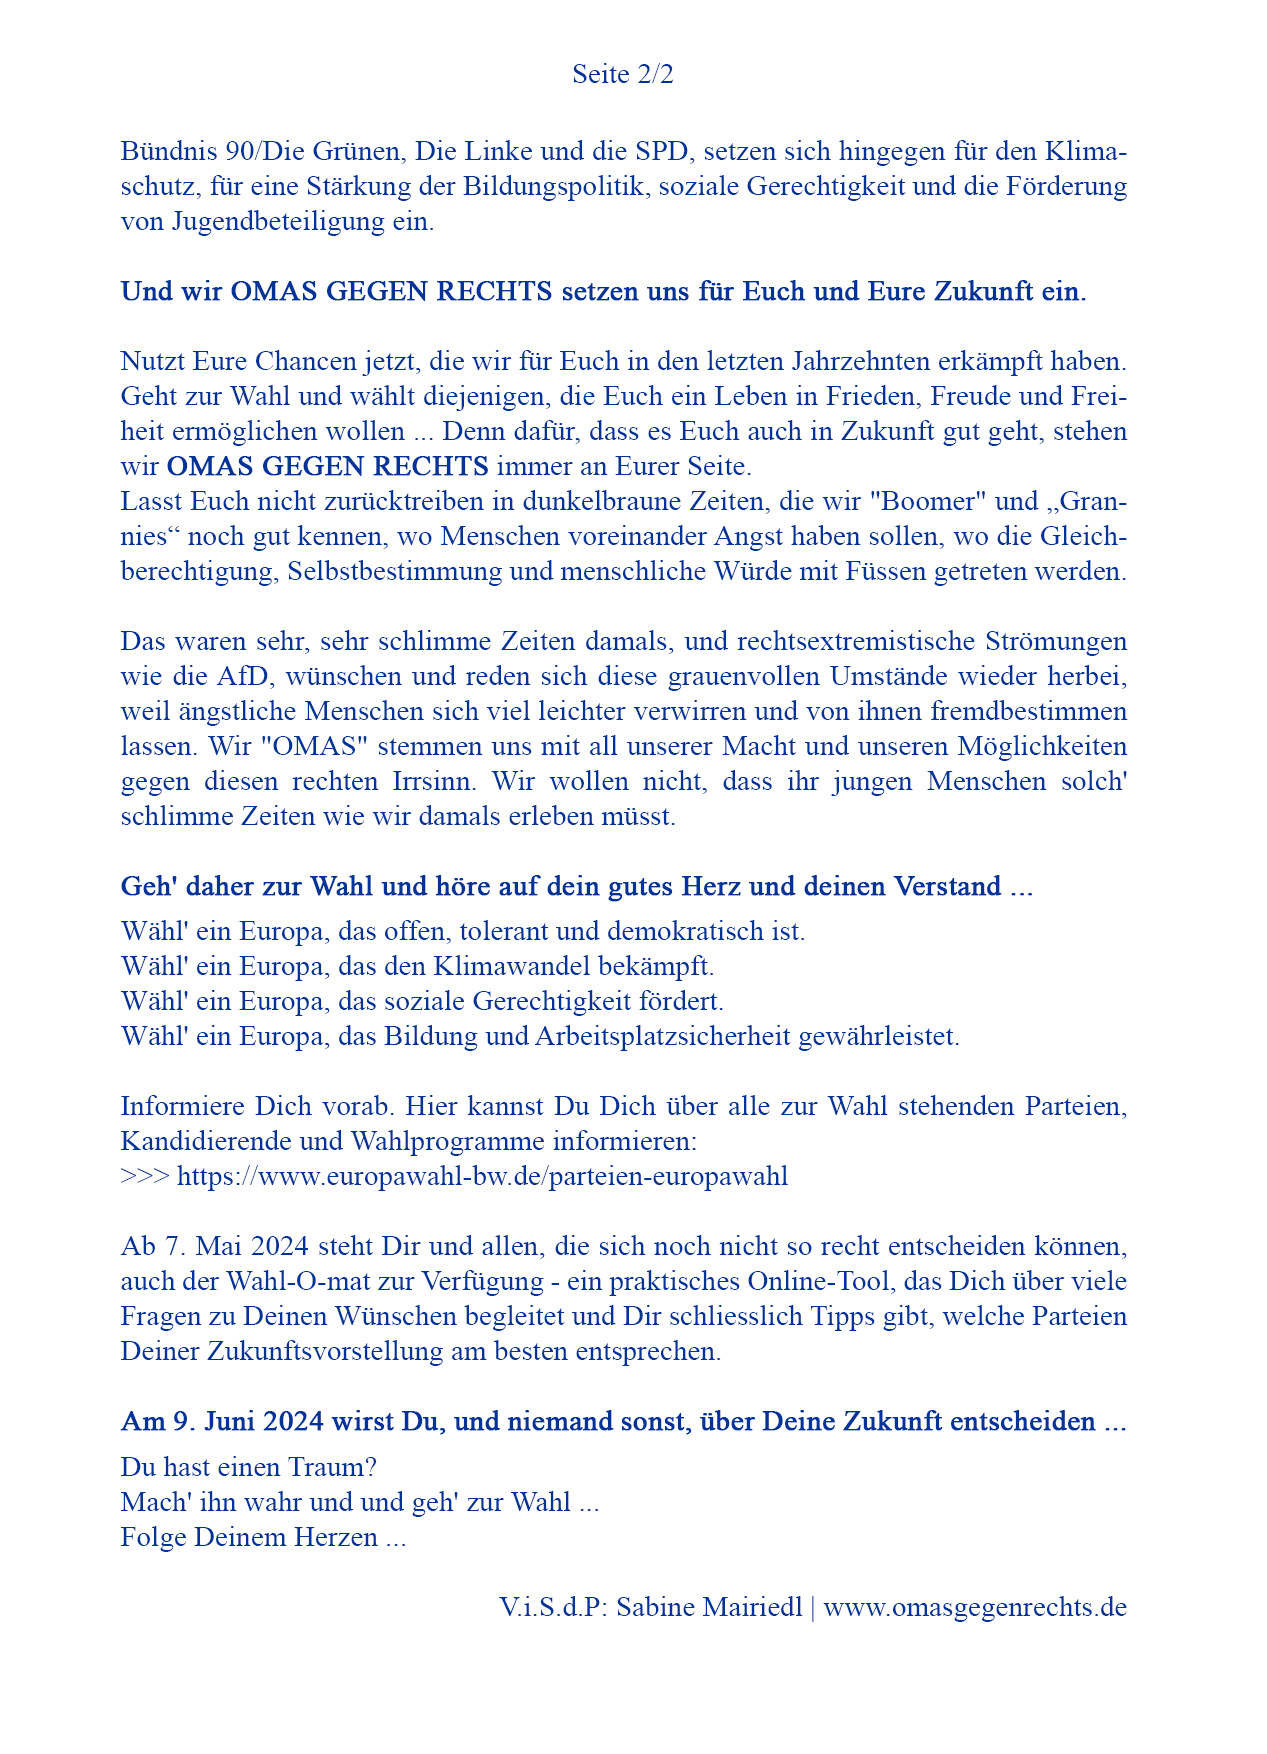 Enkelbrief zur Europawahl am 9.Juni 2024 - Seite 2 von 2 - omasgegenrechts.de - #omasgegenrechts.aktiv